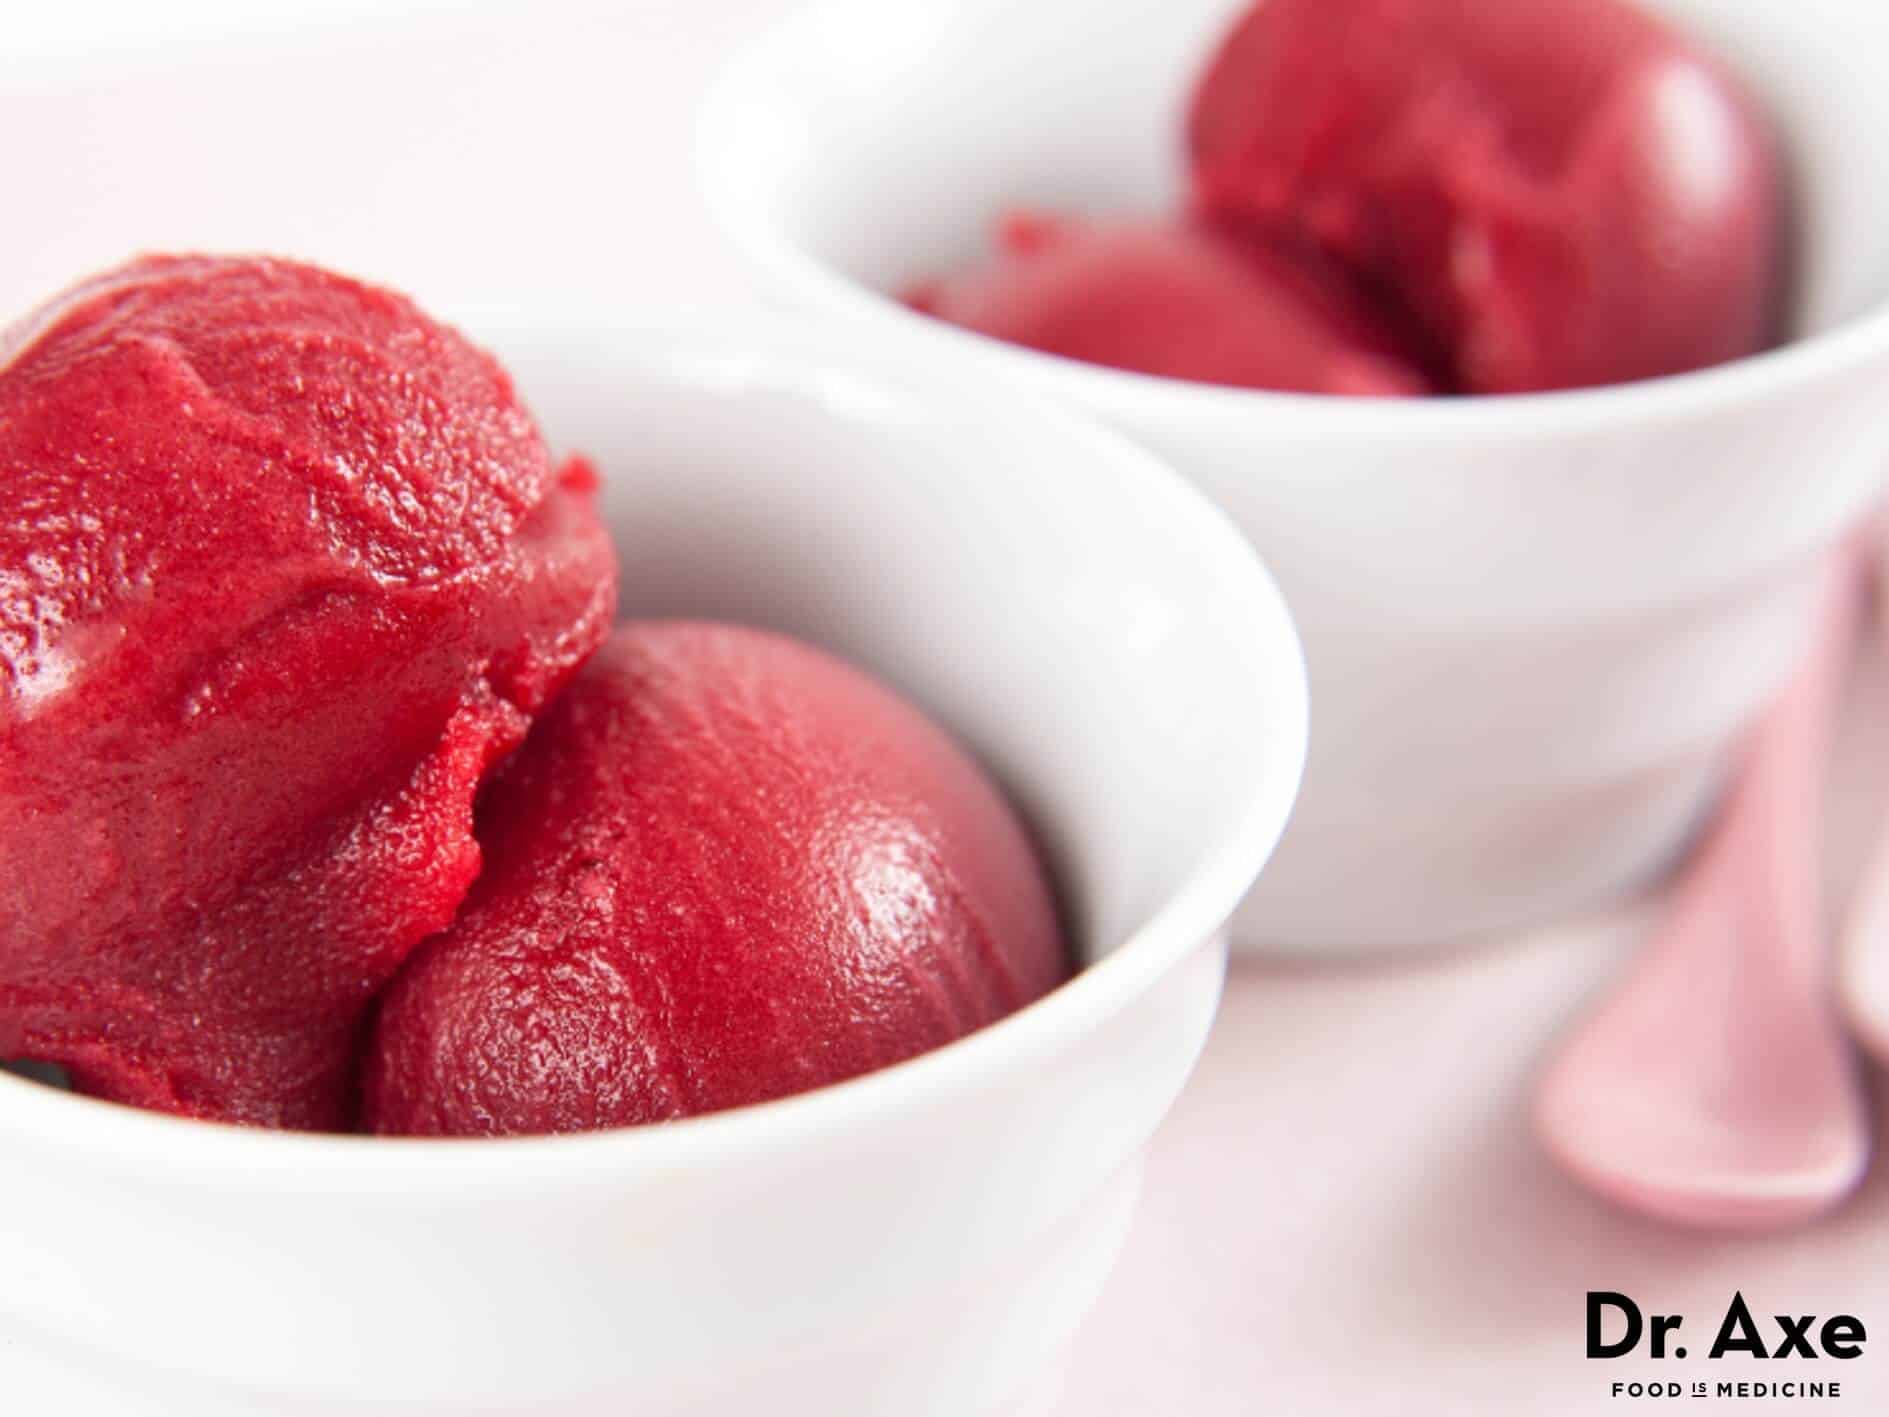 Lemon raspberry sorbet recipe - Dr. Axe